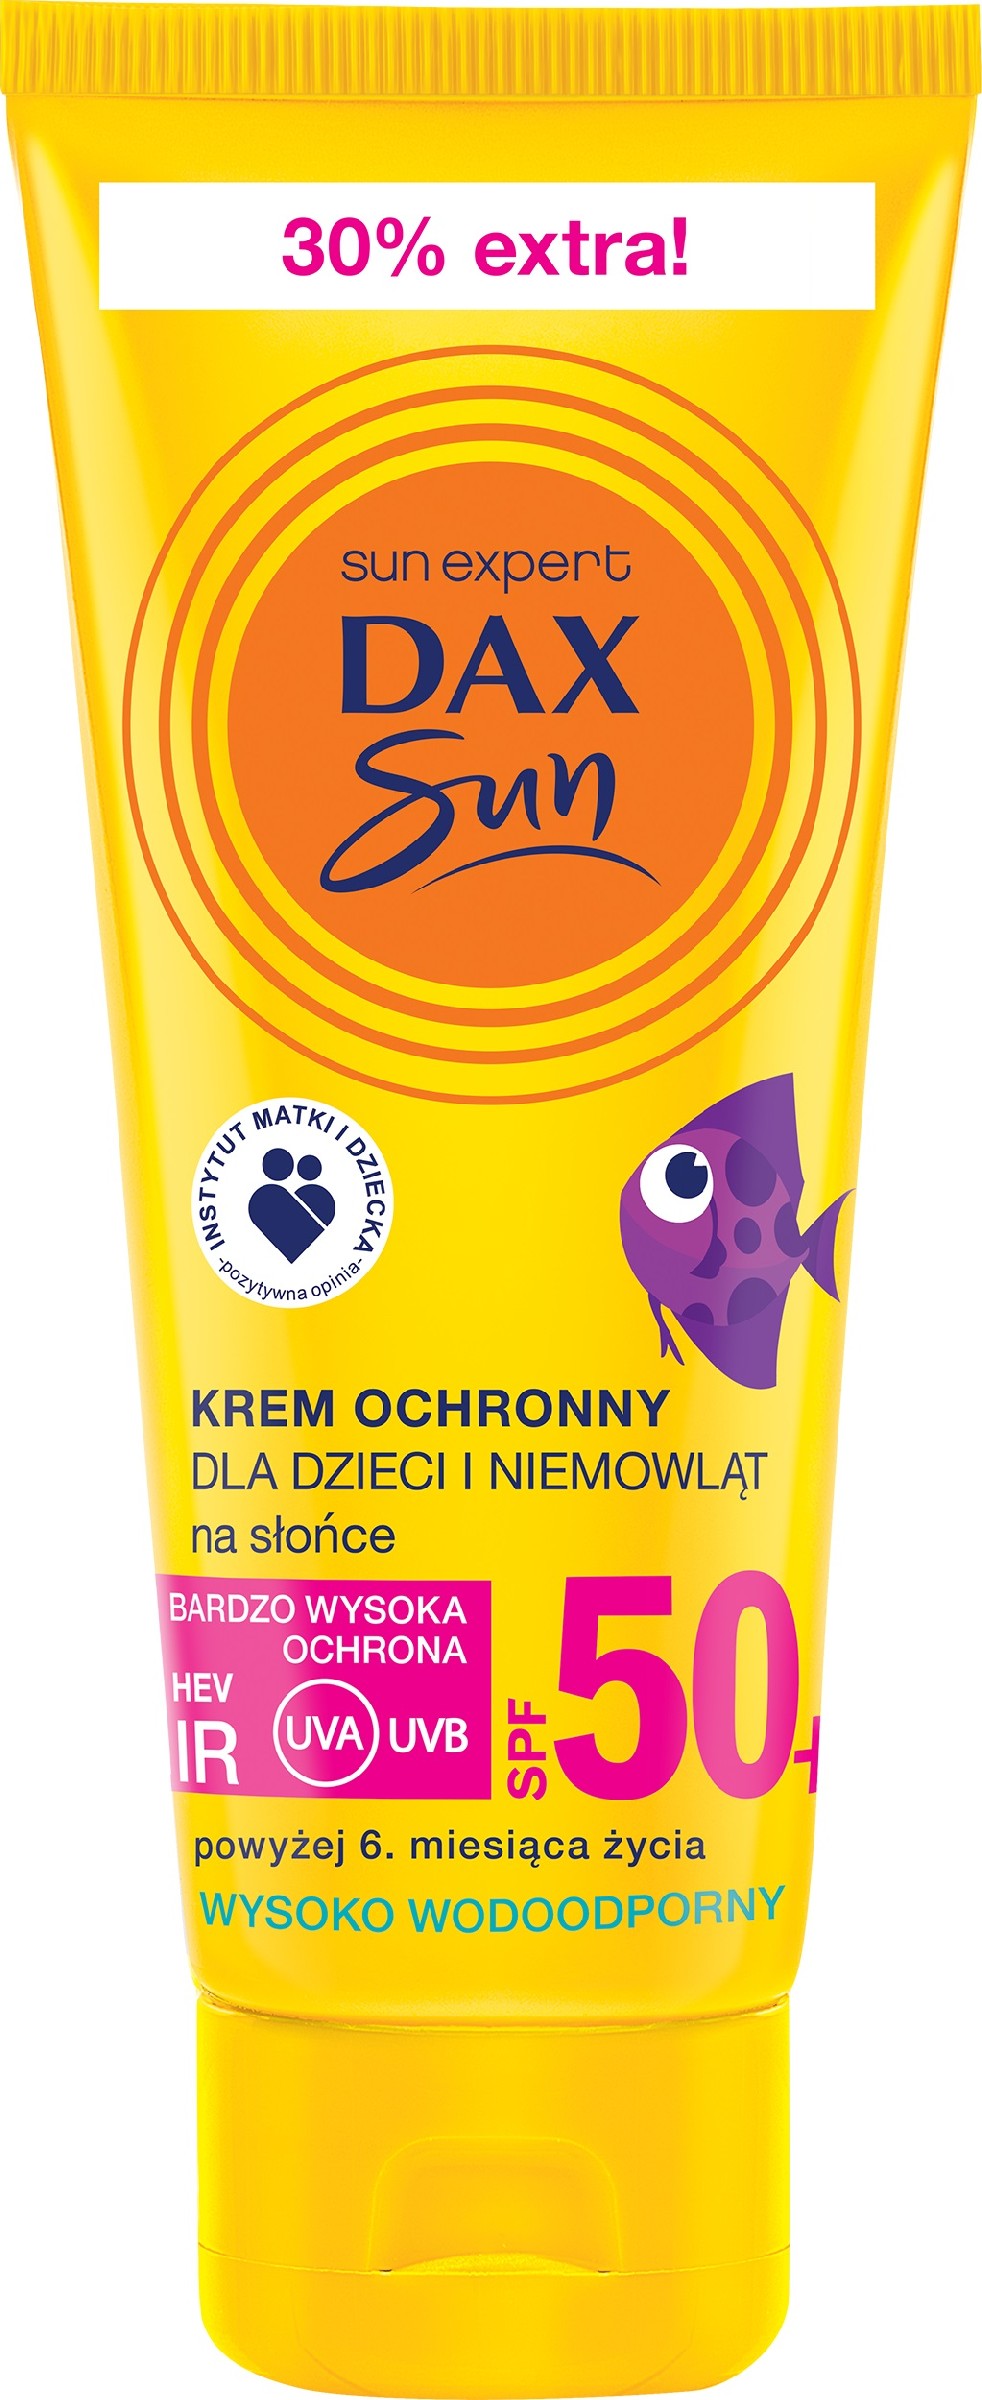 Dax Sun Krem ochronny na słońce dla dzieci i niemowląt SPF50+  75ml